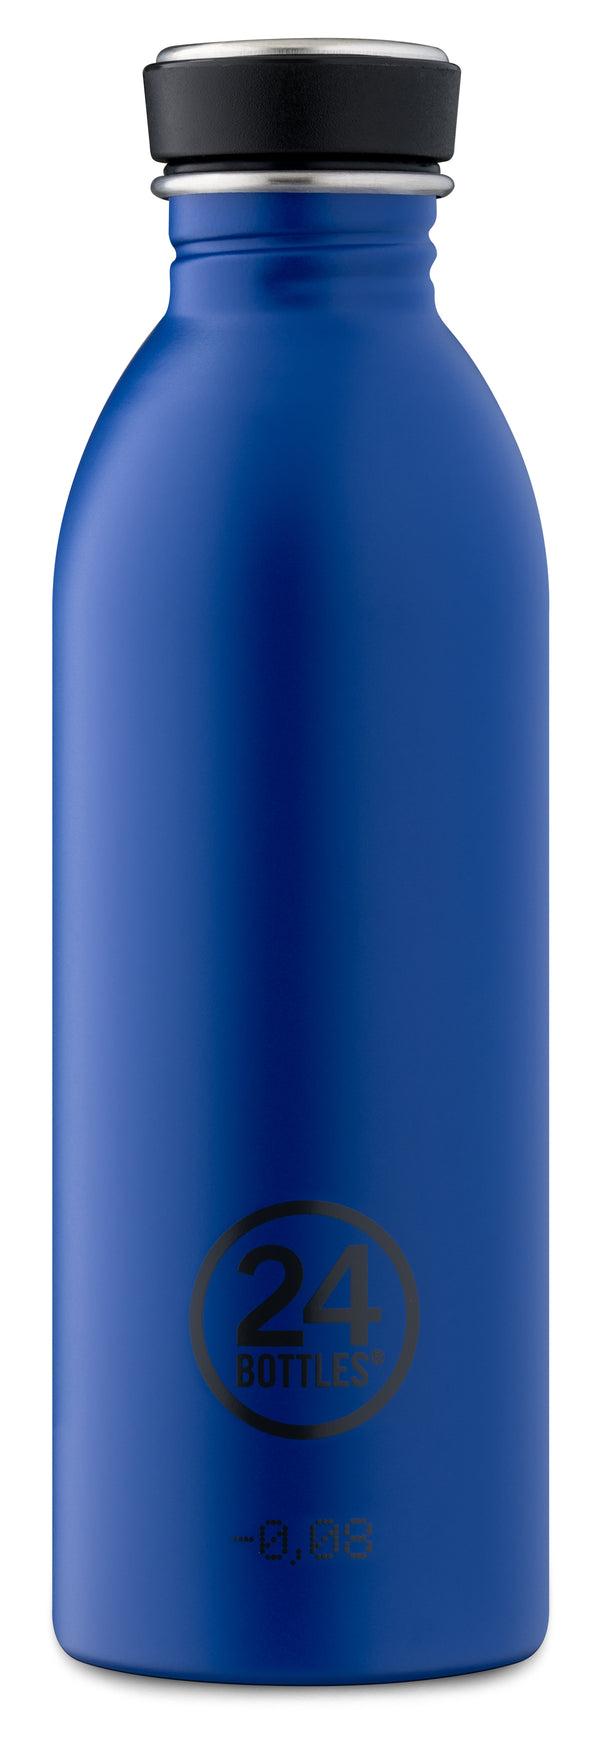 قنينة ماء معدنية - 1000 مل - أزرق -  URBAN Bottle (1 L) Lightest Insulated Stainless Steel Water Bottle, Eco-Friendly Reusable BPA - 24Bottles - cG9zdDozNTg4Njk=